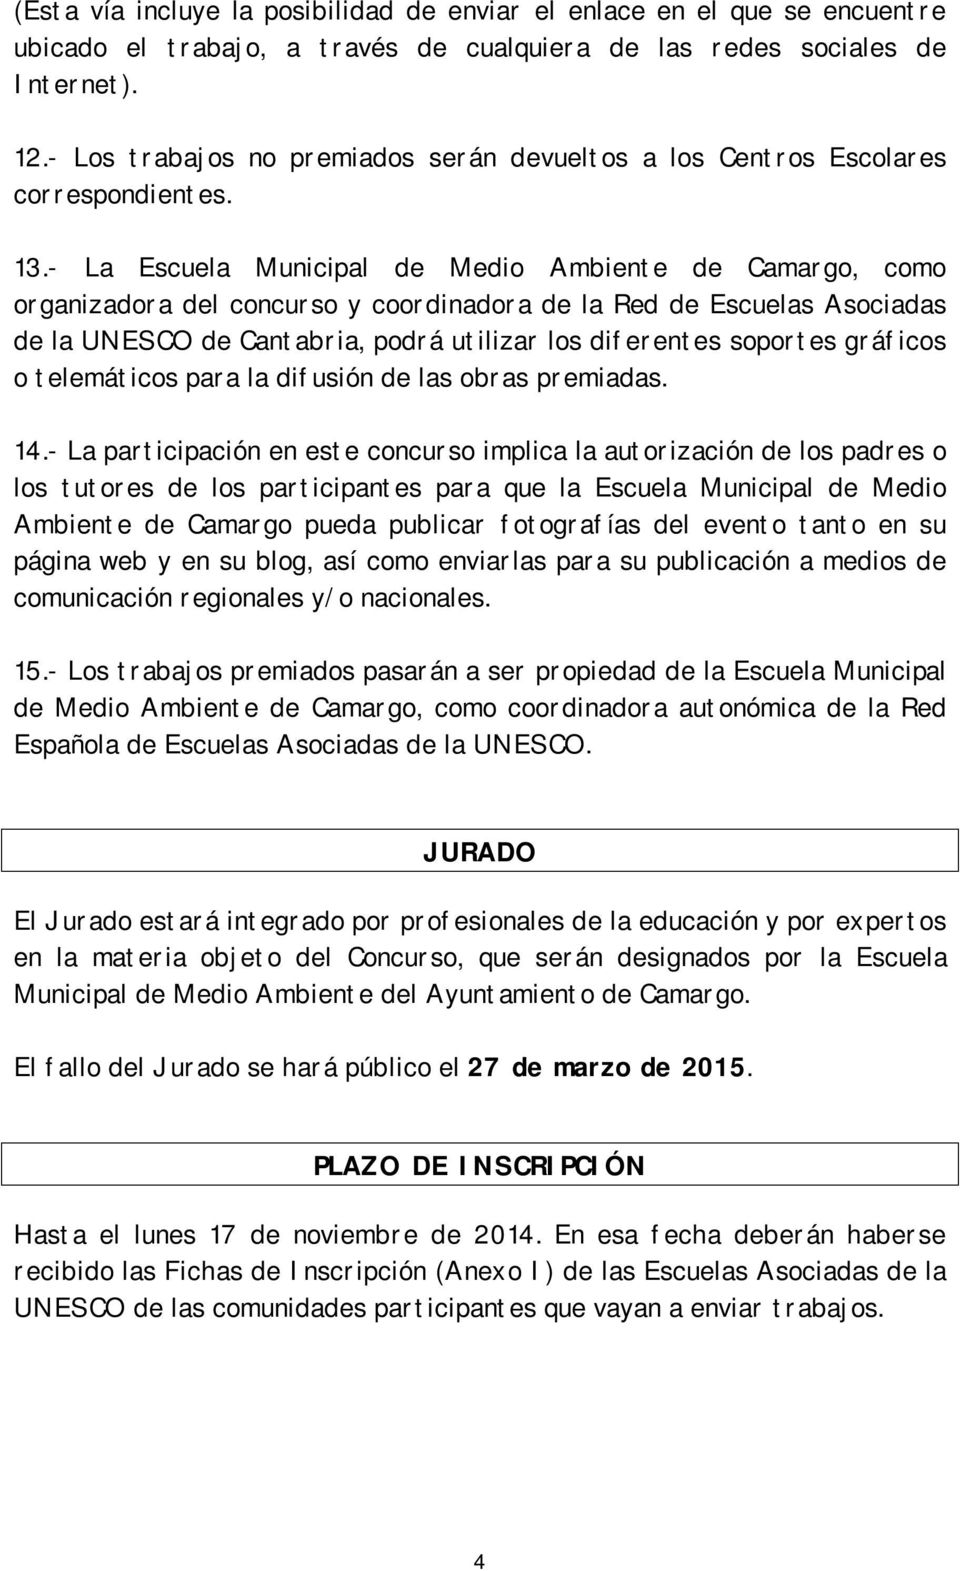 - La Escuela Municipal de Medio Ambiente de Camargo, como organizadora del concurso y coordinadora de la Red de Escuelas Asociadas de la UNESCO de Cantabria, podrá utilizar los diferentes soportes